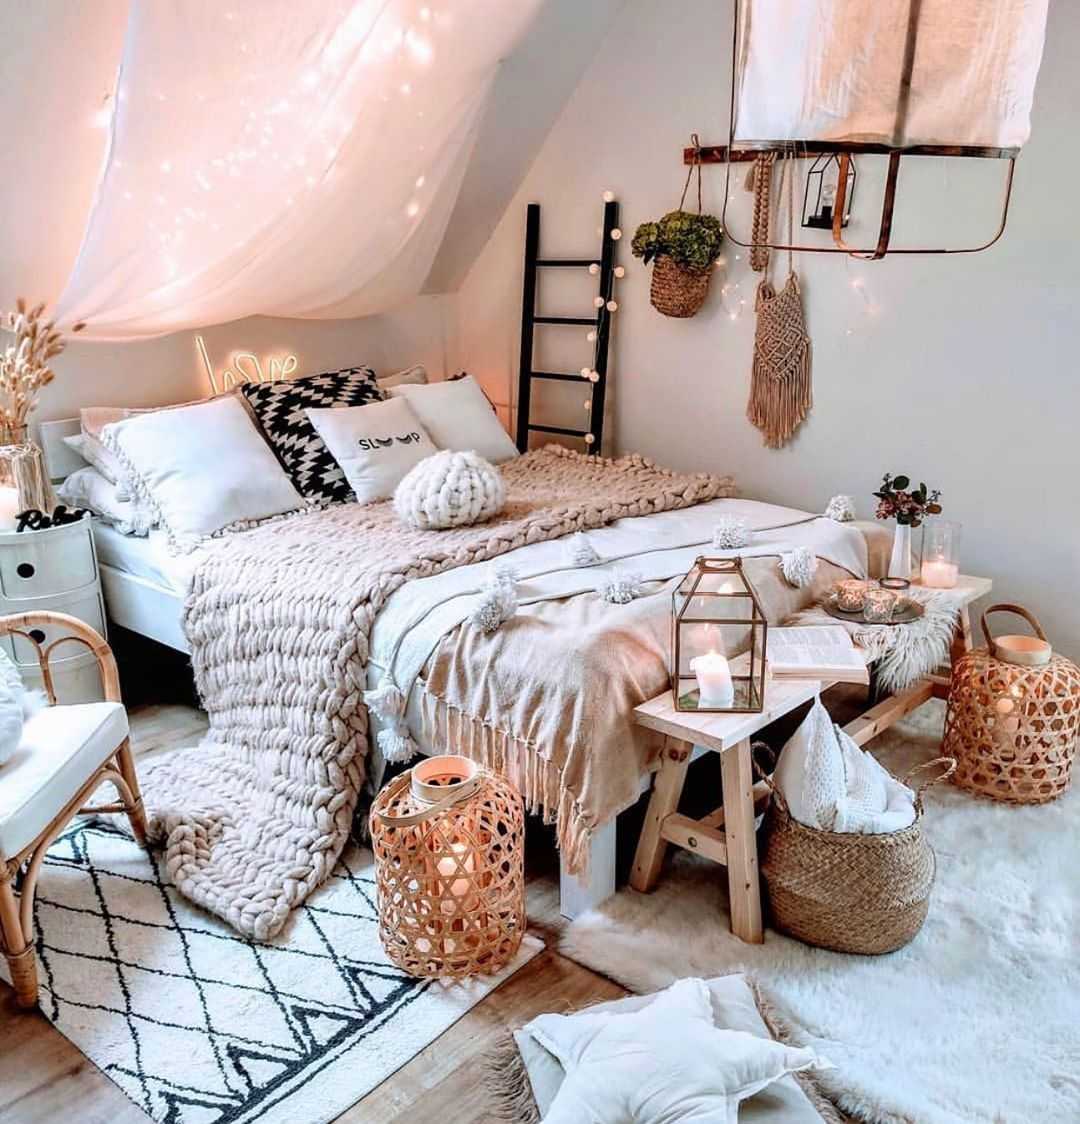 Как сделать спальню уютной своими руками: цвет, мебель, текстиль, декор (+35 фото)